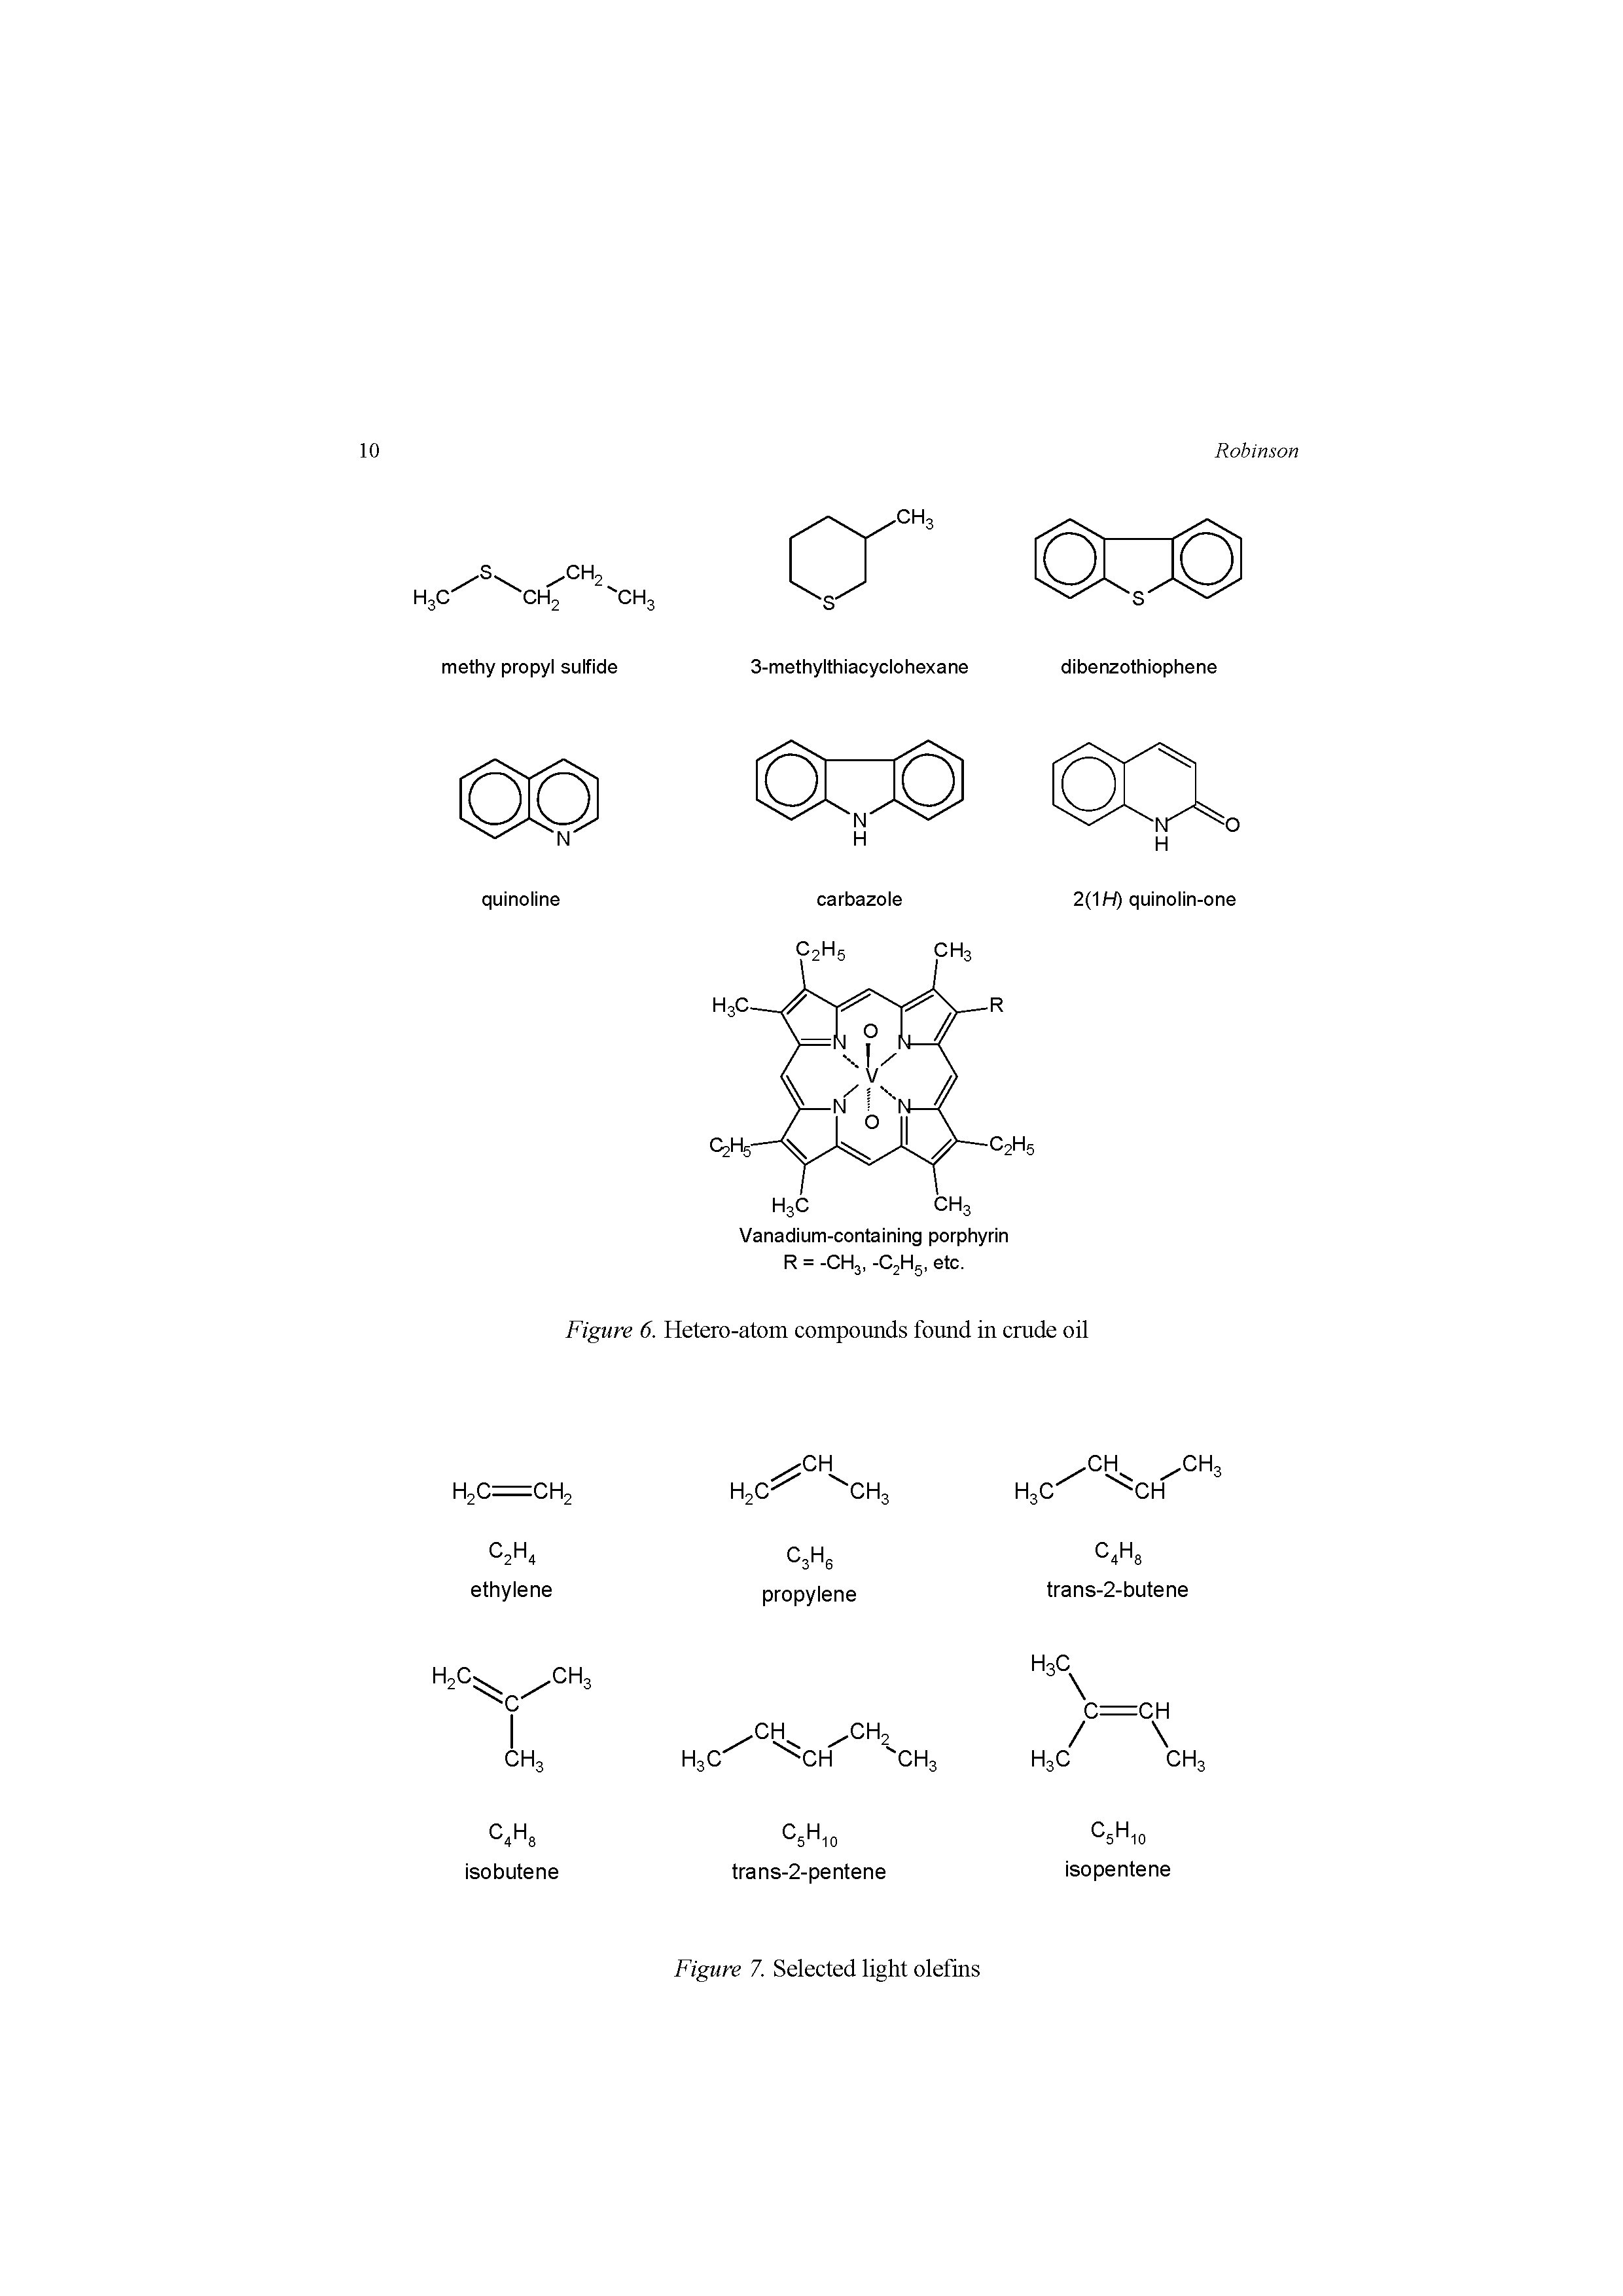 Figure 6. Hetero-atom compounds found in crude oil...